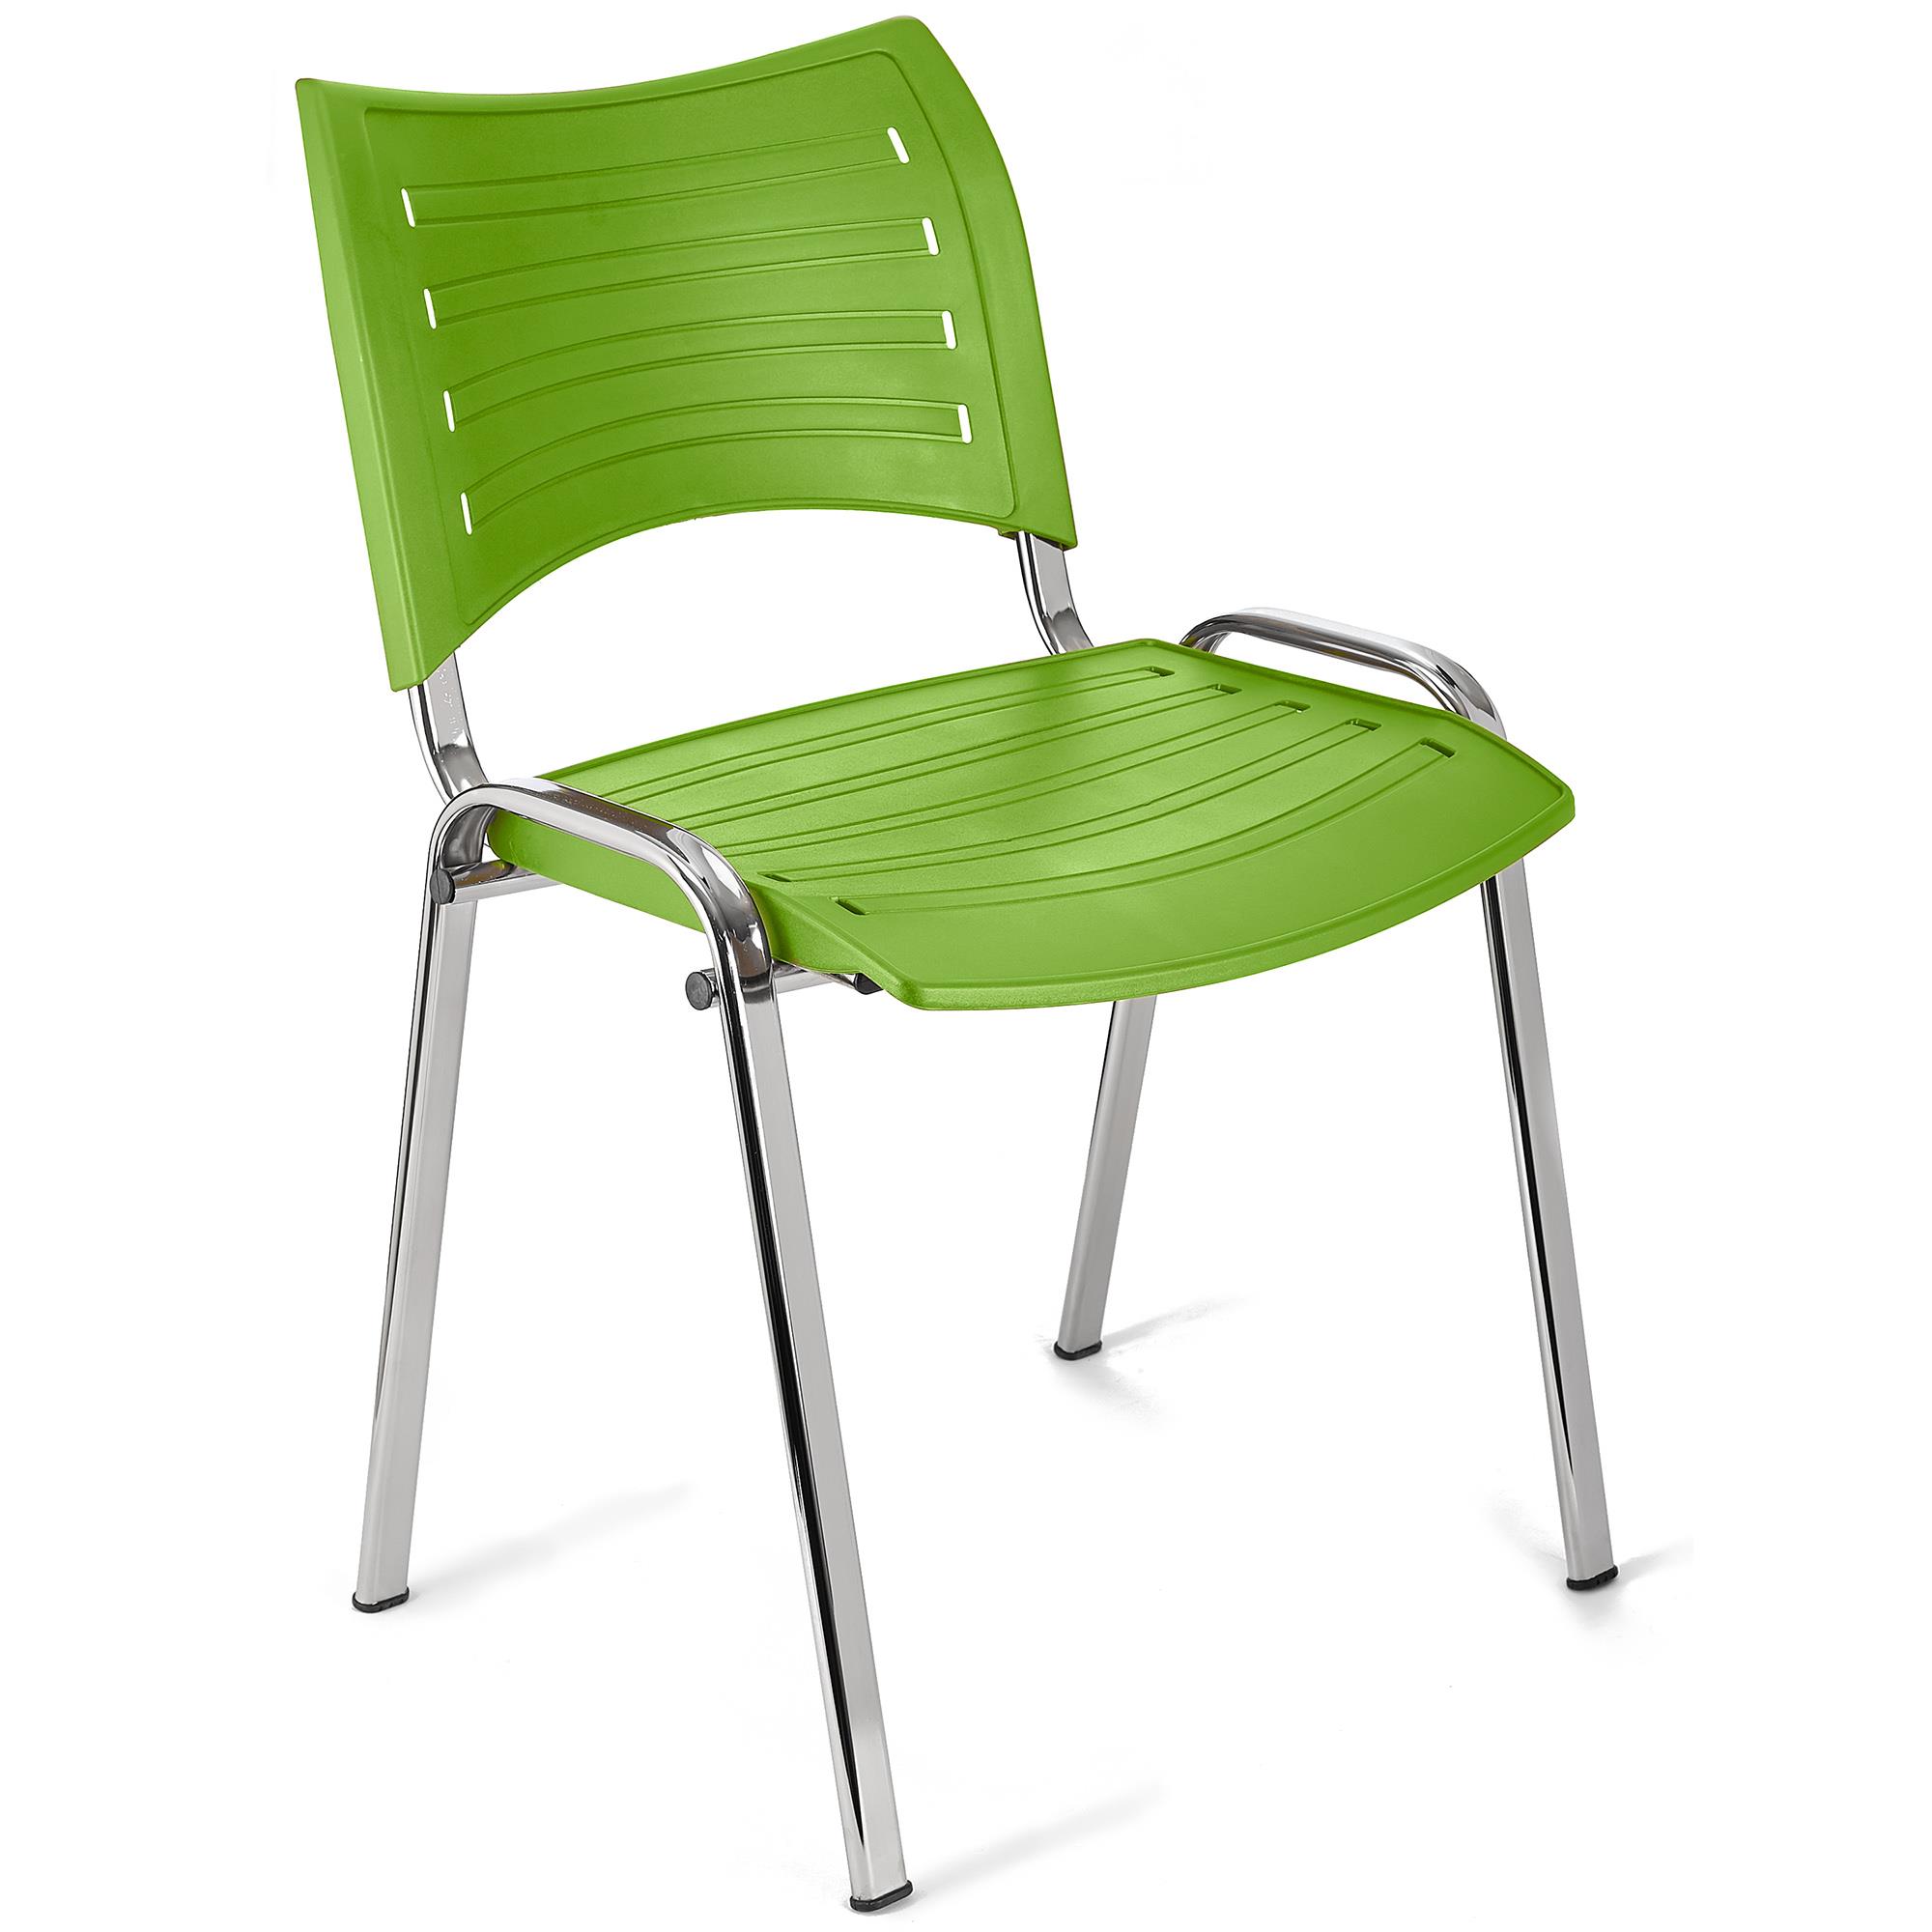 Cadeira de Visita ELVA, Empilhável e Prática, Confortável, Pernas Cromadas, Cor Verde